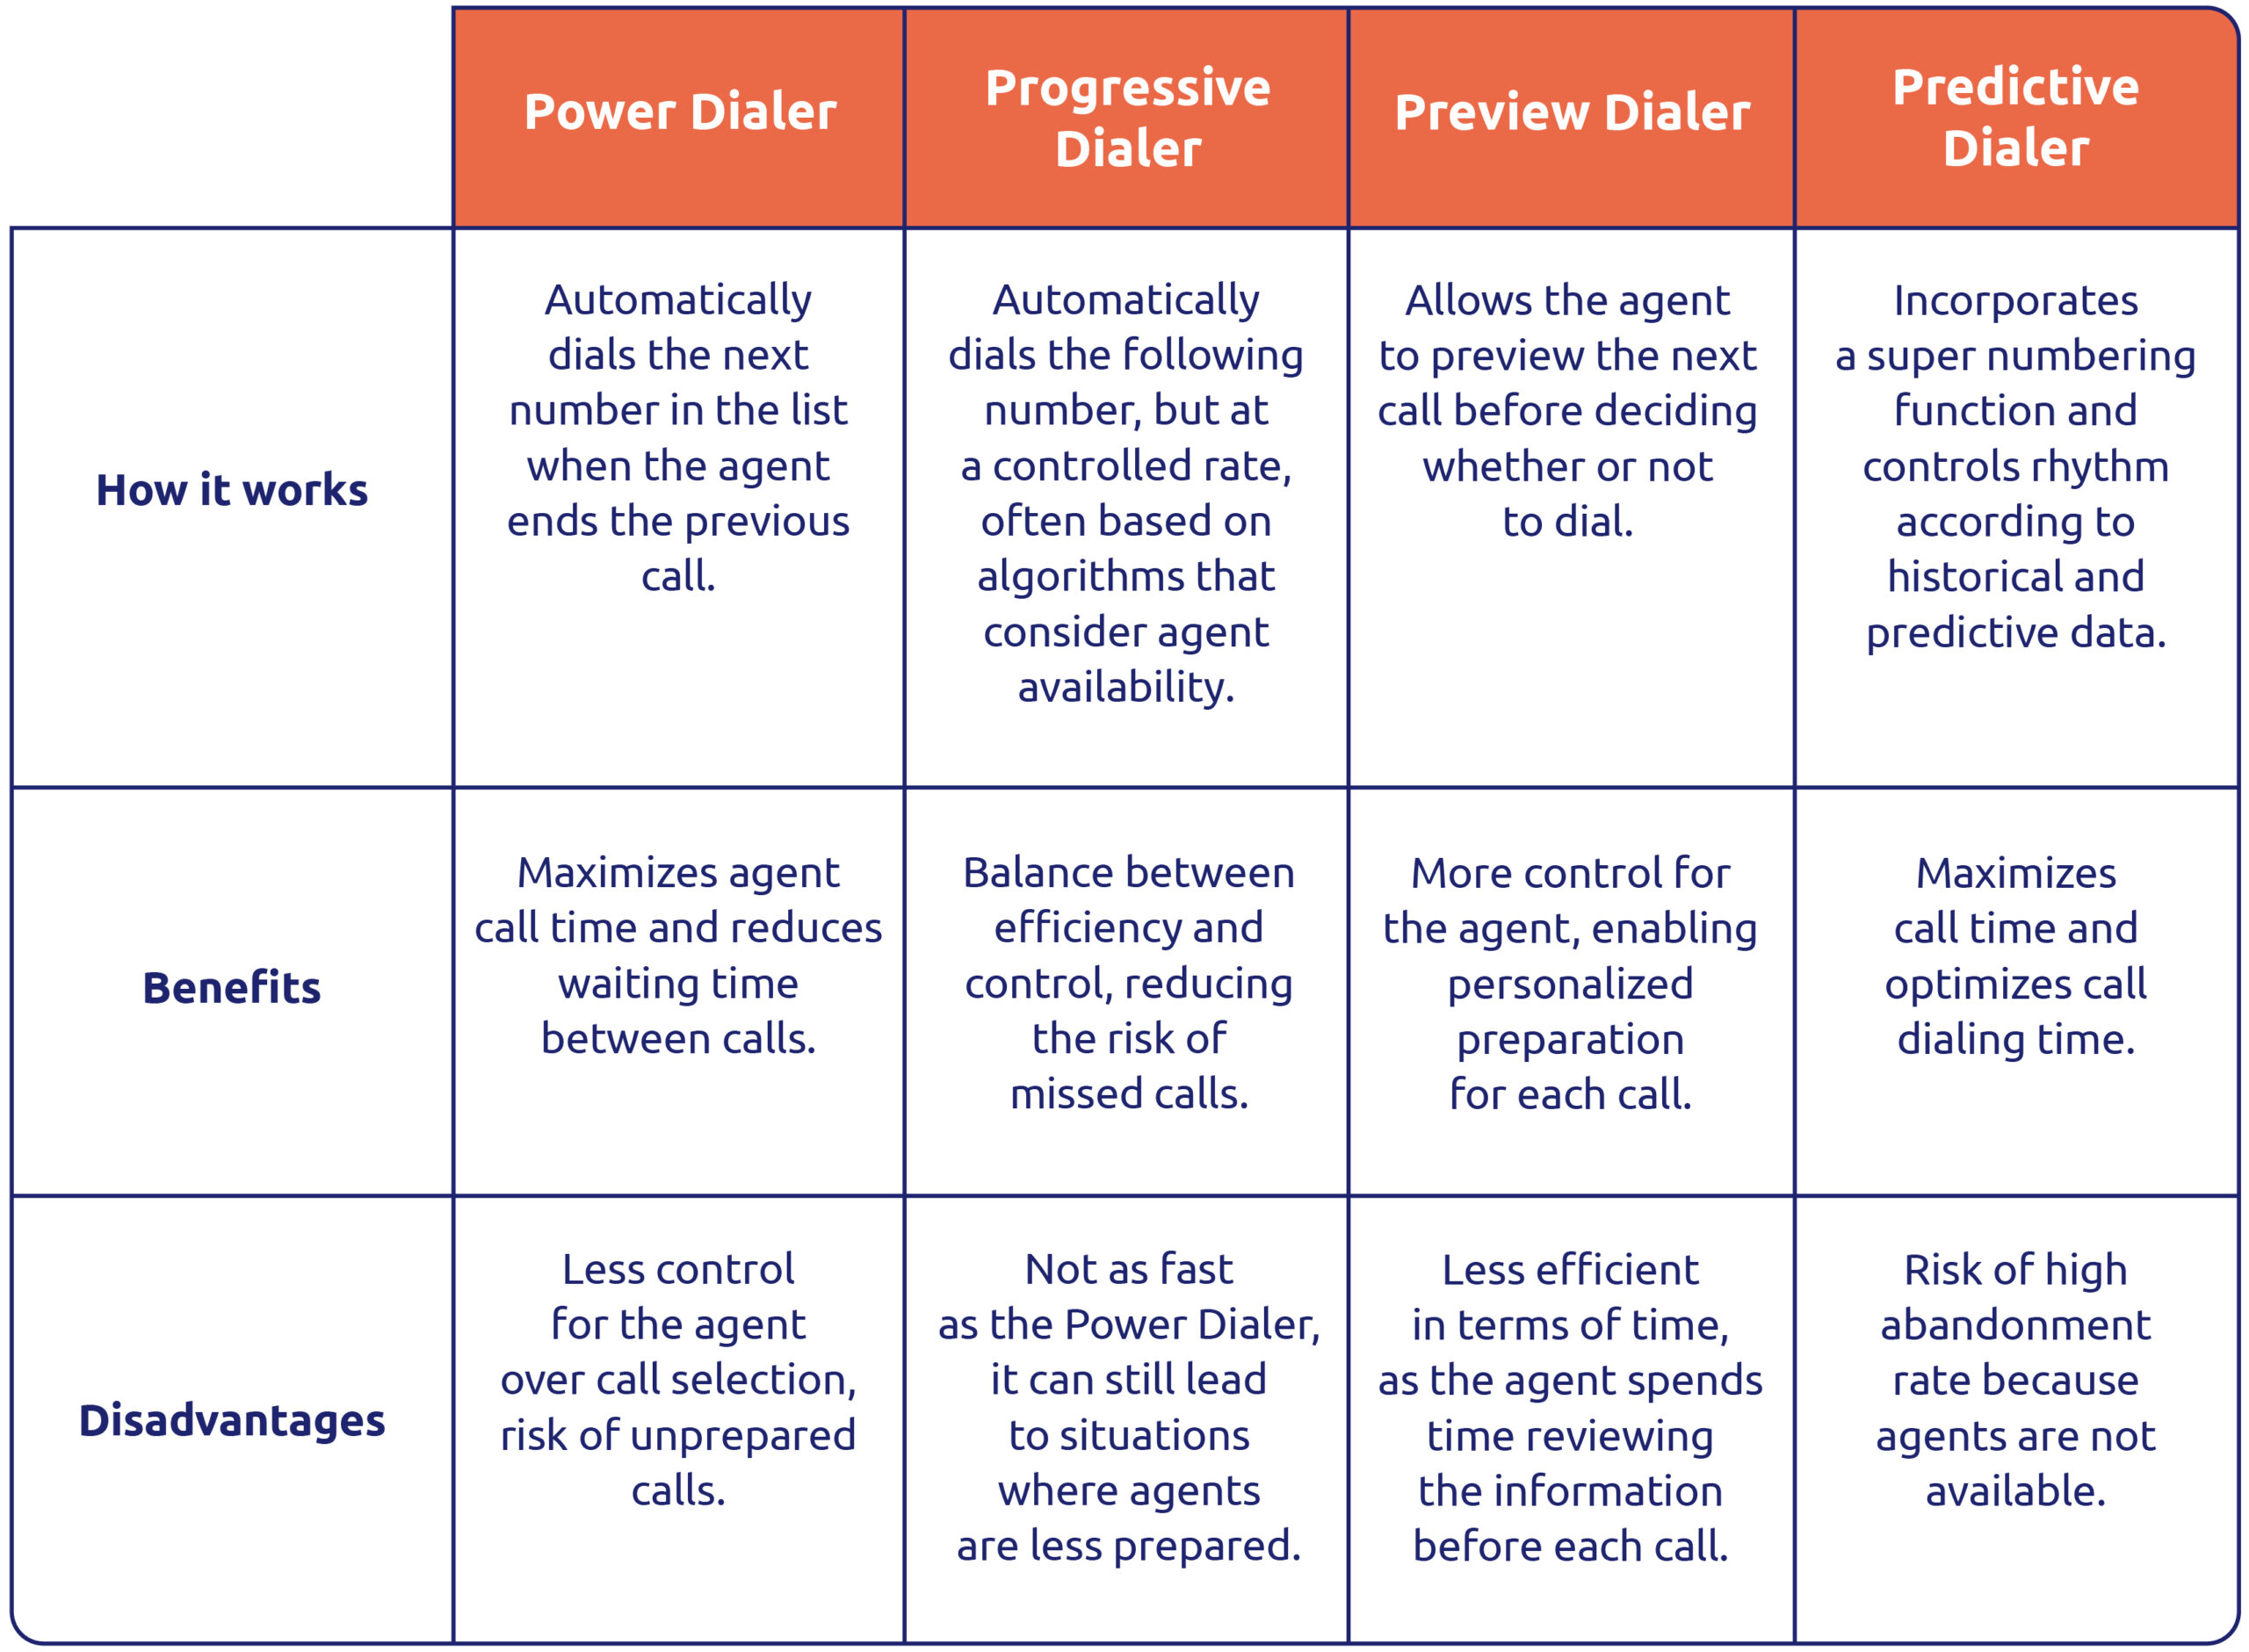 Differences between power dialer, progressive dialer, preview dialer, predictive dialer